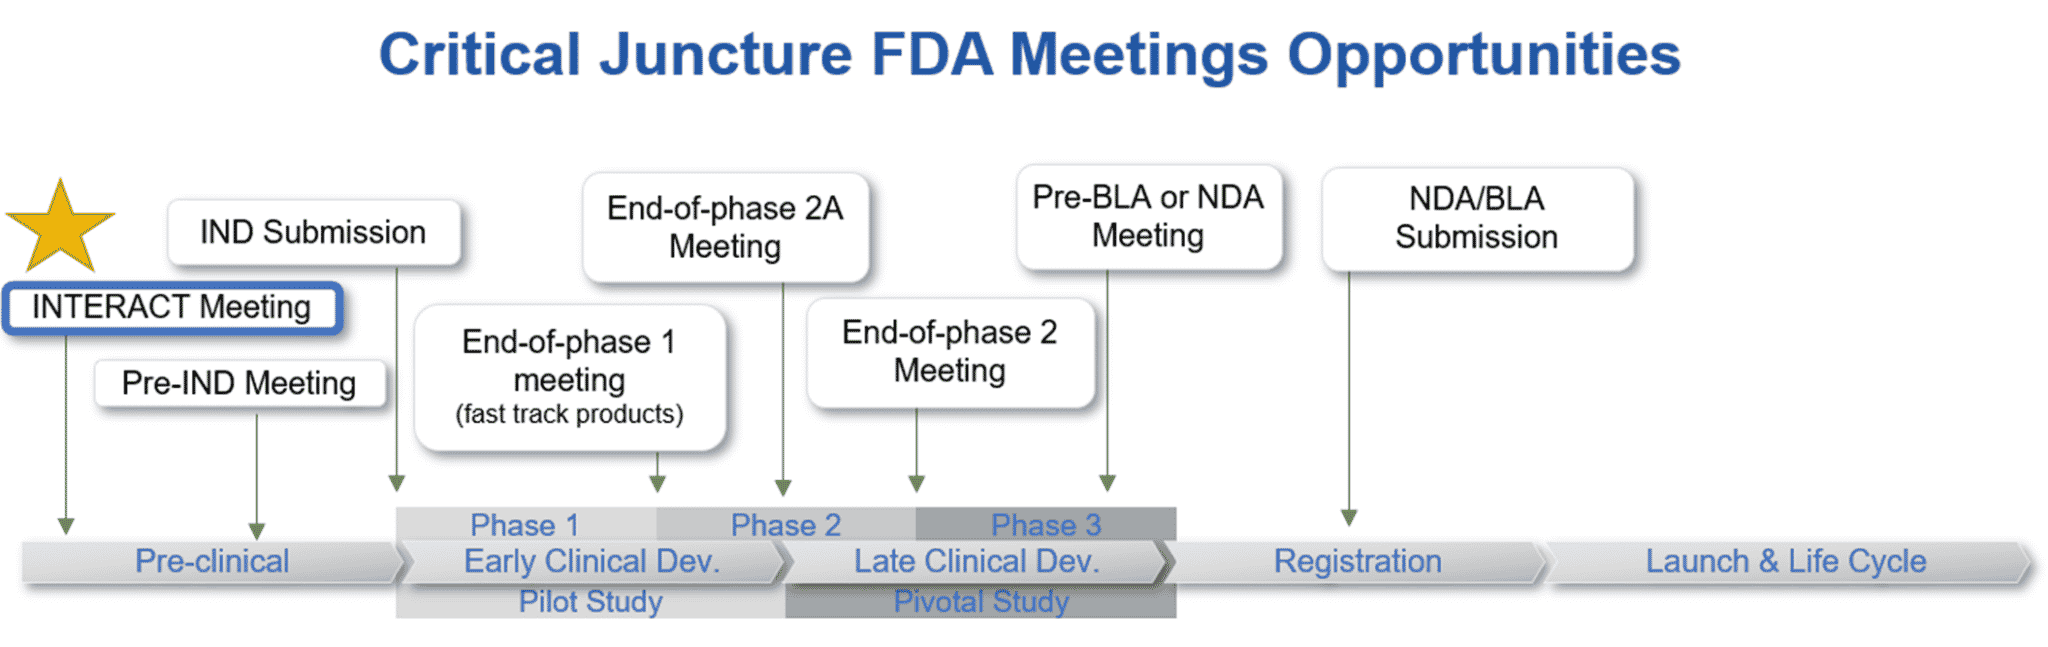 FDA Meeting Opportunities